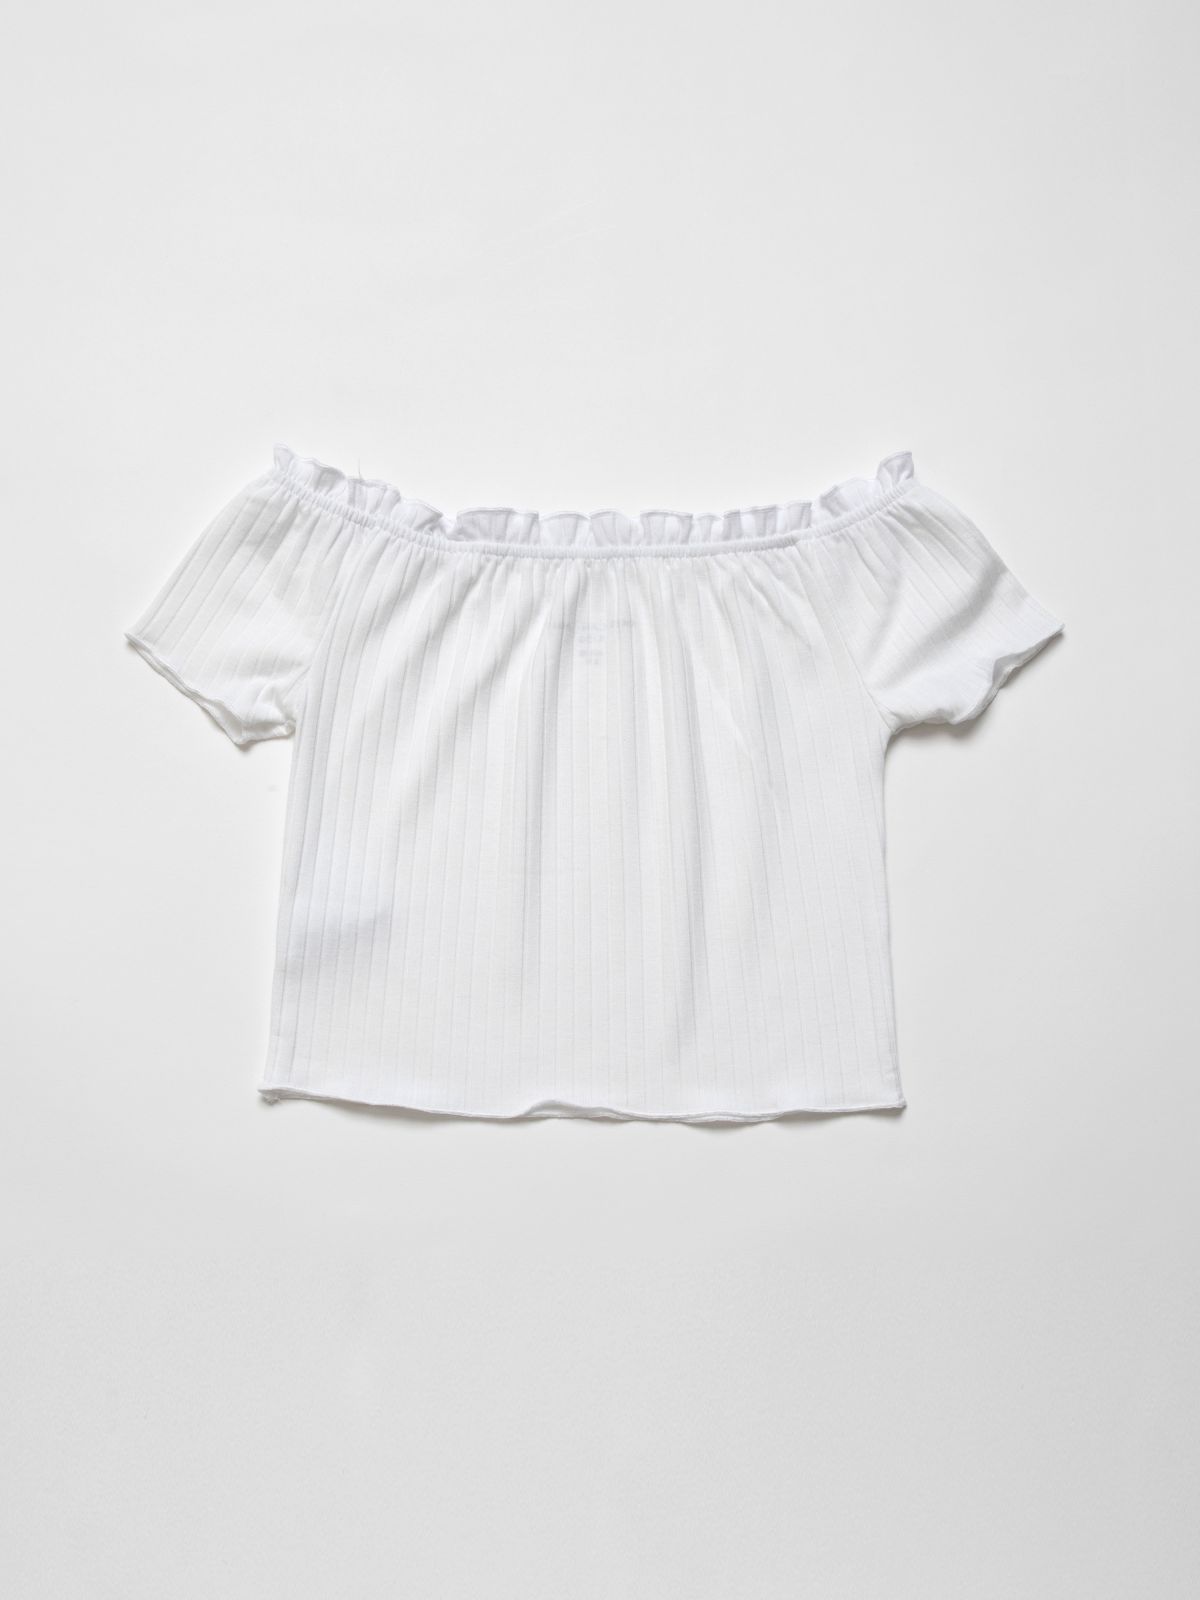  חולצת אוף שולדרס בטקסטורת פסים / בנות של AMERICAN EAGLE